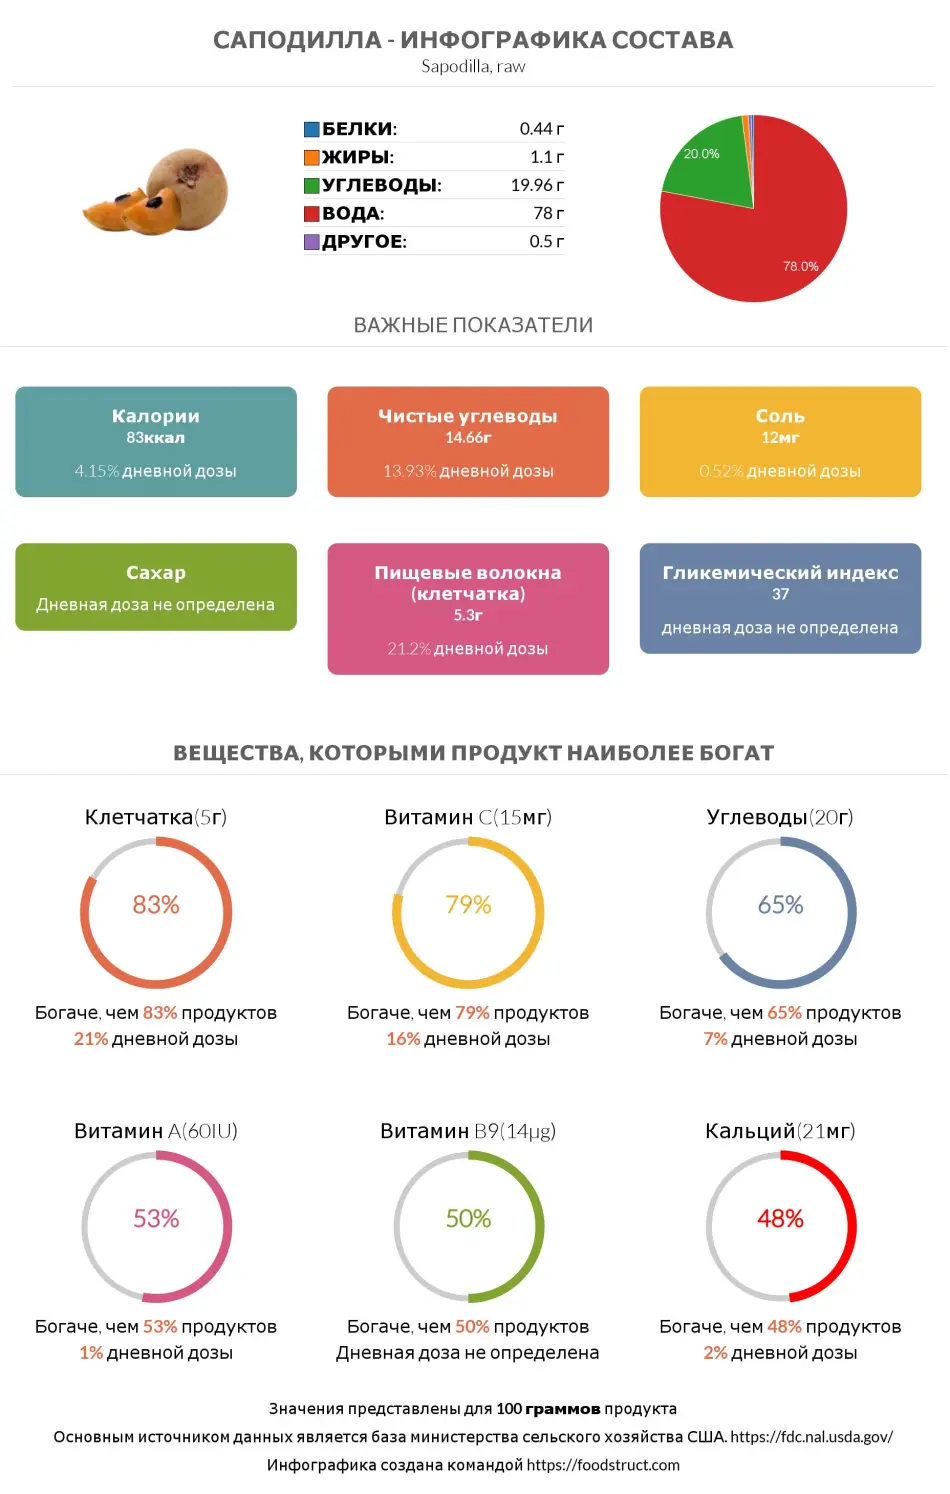 Инфографика состава и питательности для продукта Саподилла